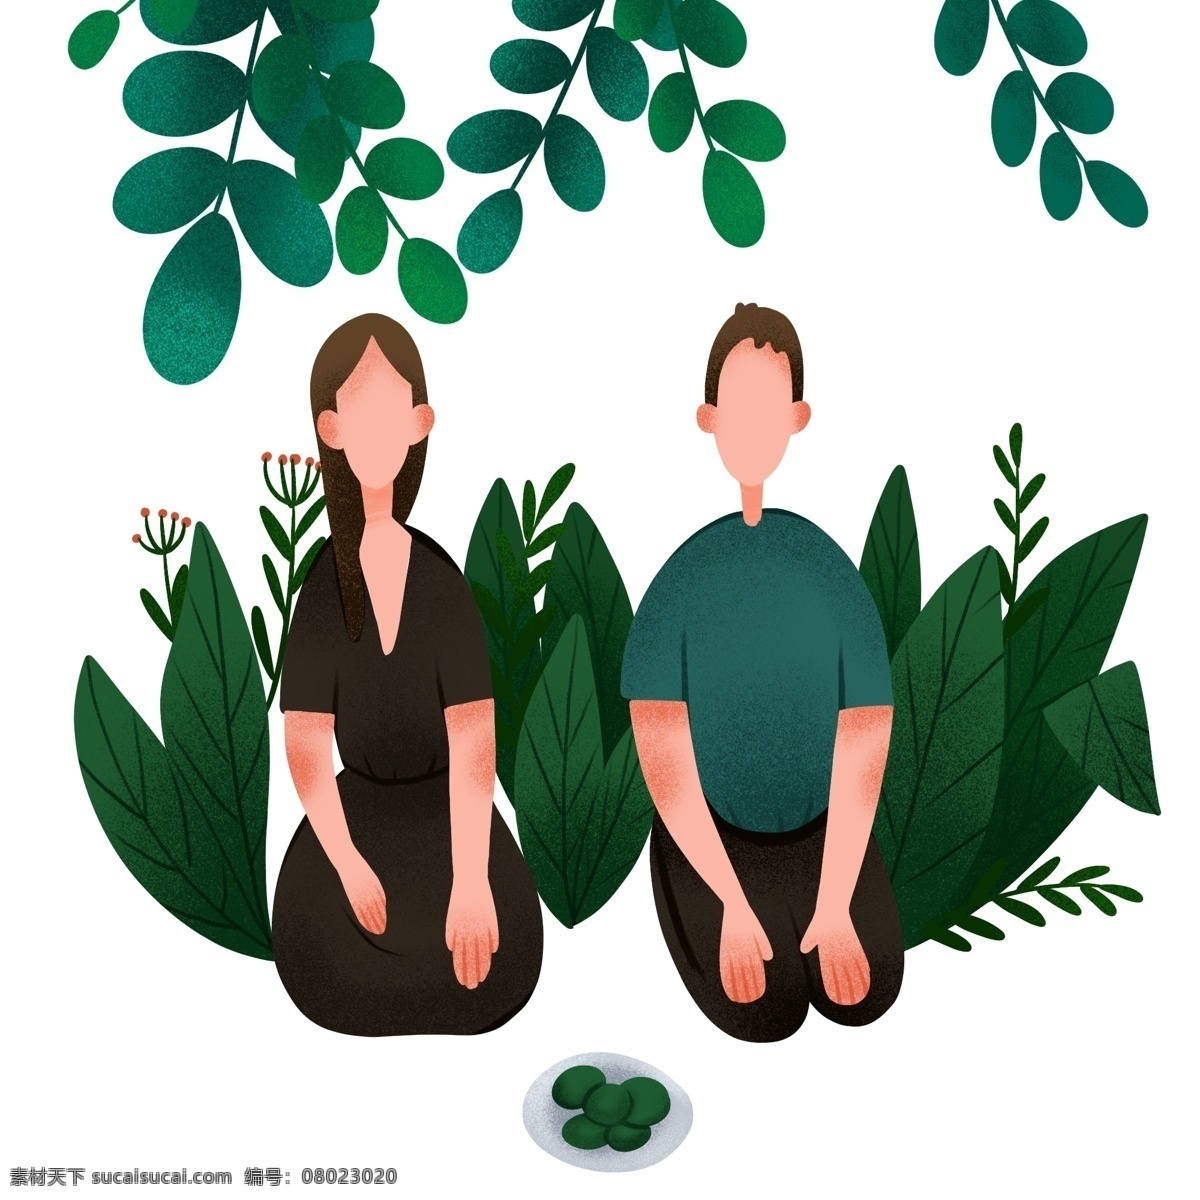 清明节 上坟 插画 上坟的夫妻 卡通的插画 清明节插画 清明 节气 节日 祭拜 绿色的植物